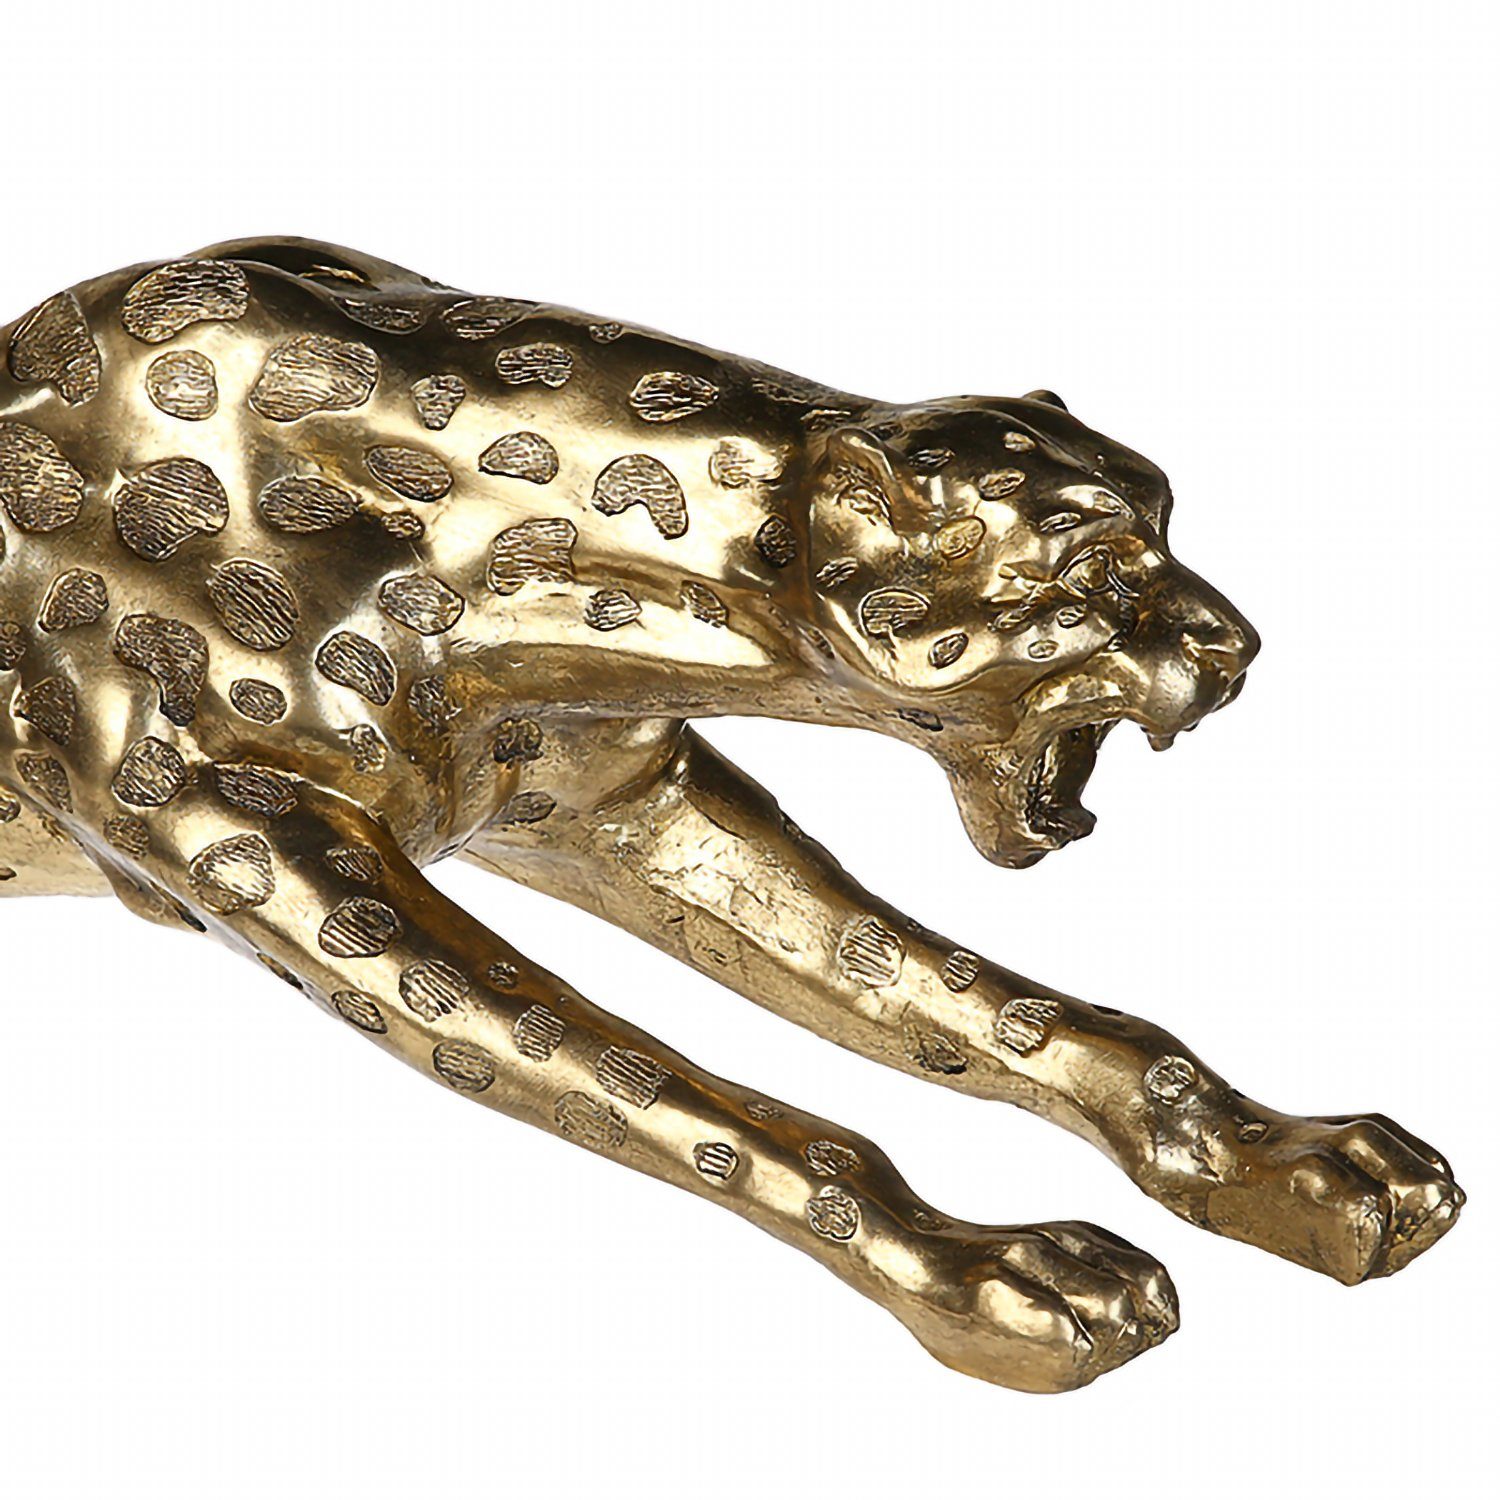 Dekofigur GILDE 31cm GILDE x B. gold - Skulptur Gepard H. - 145cm